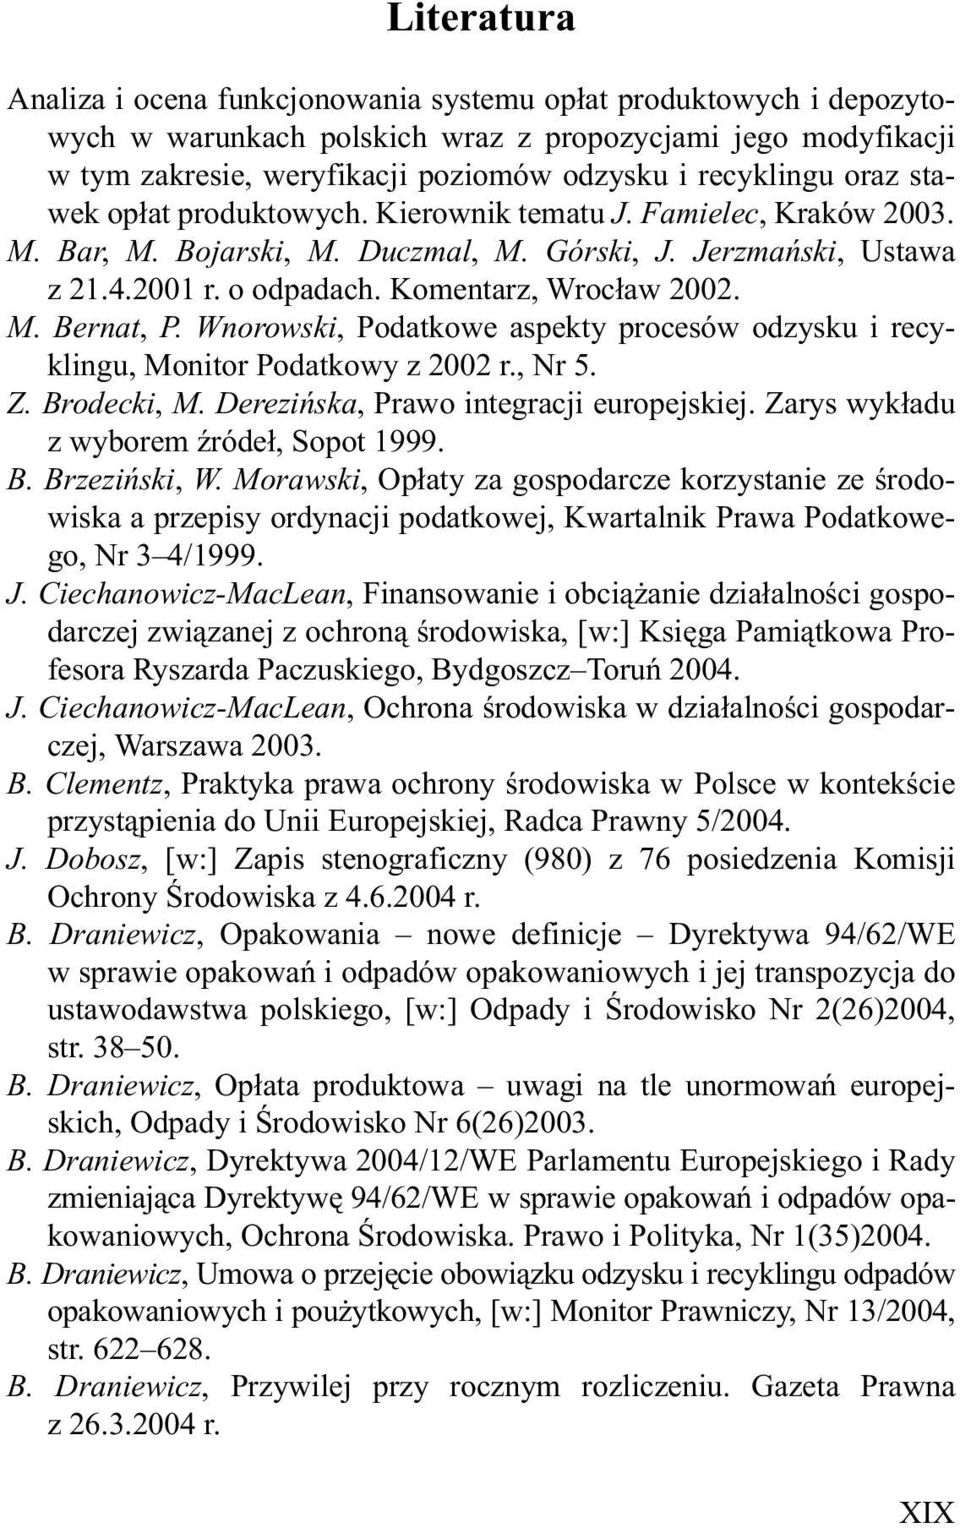 Komentarz, Wroc³aw 2002. M. Bernat, P. Wnorowski, Podatkowe aspekty procesów odzysku i recyklingu, Monitor Podatkowy z 2002 r., Nr 5. Z. Brodecki, M. Dereziñska, Prawo integracji europejskiej.